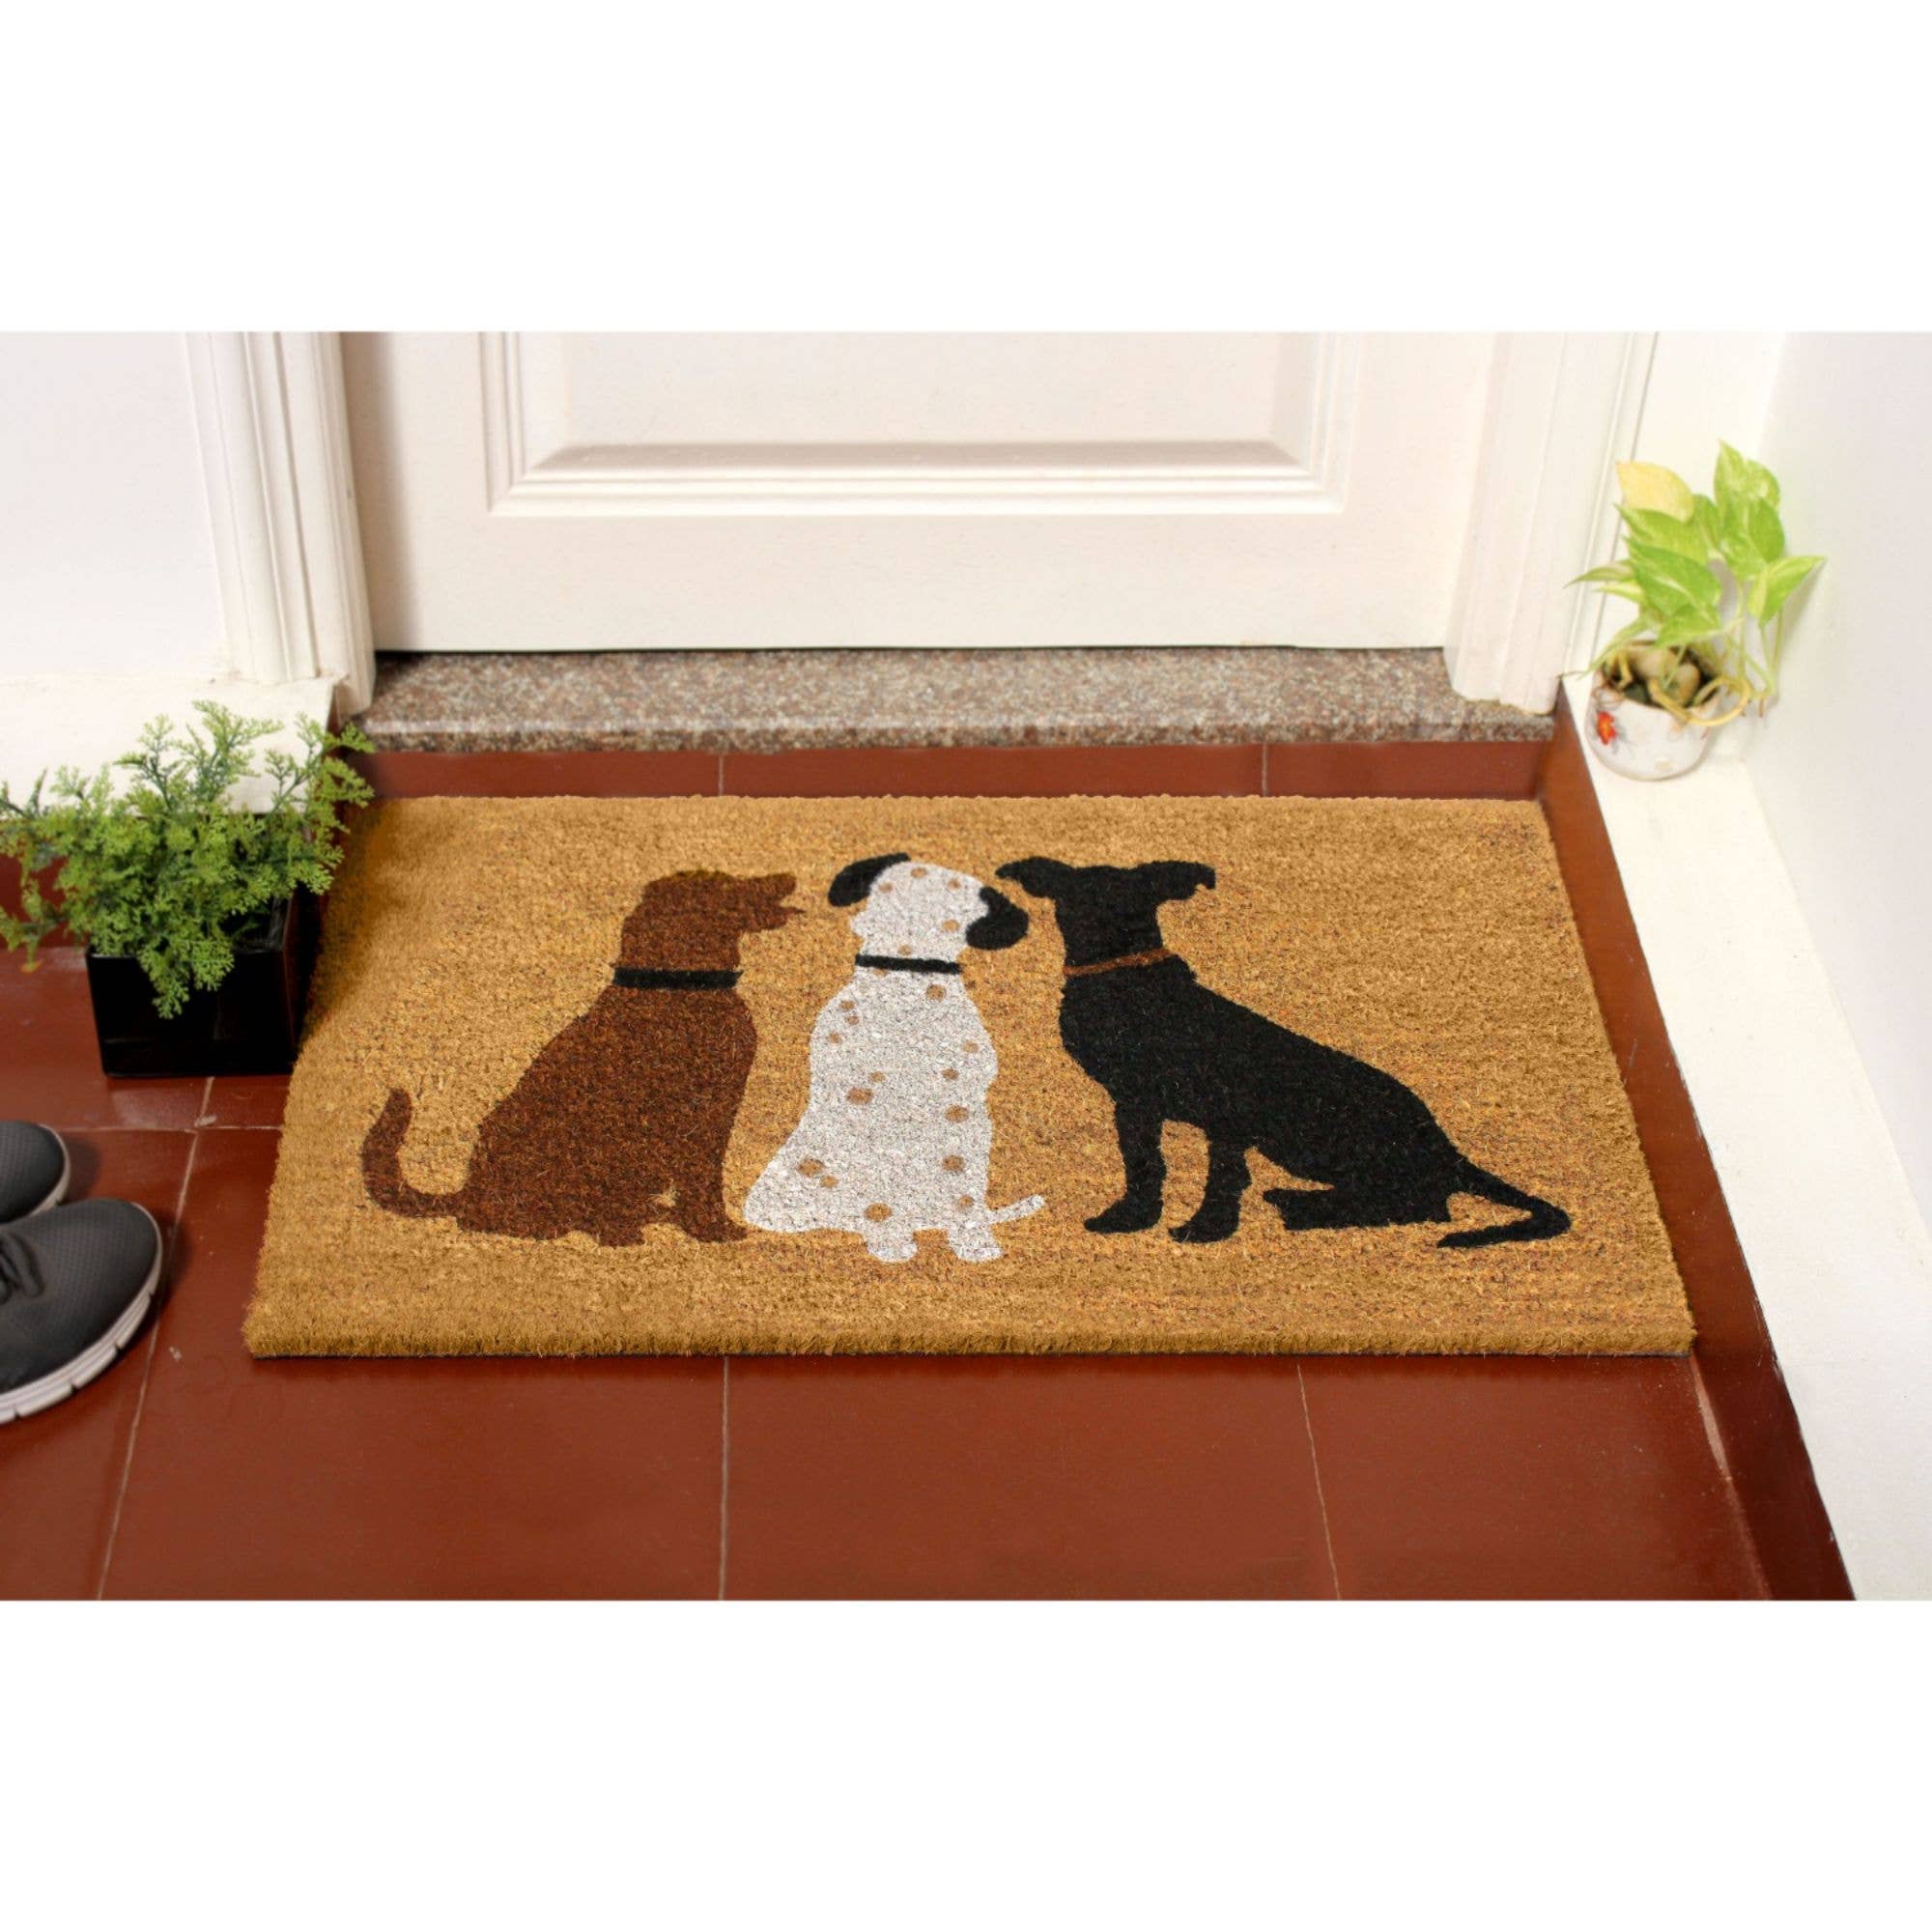 Doormat -  Machine Tufted Dogs Doormat, 18" x 30" Rug